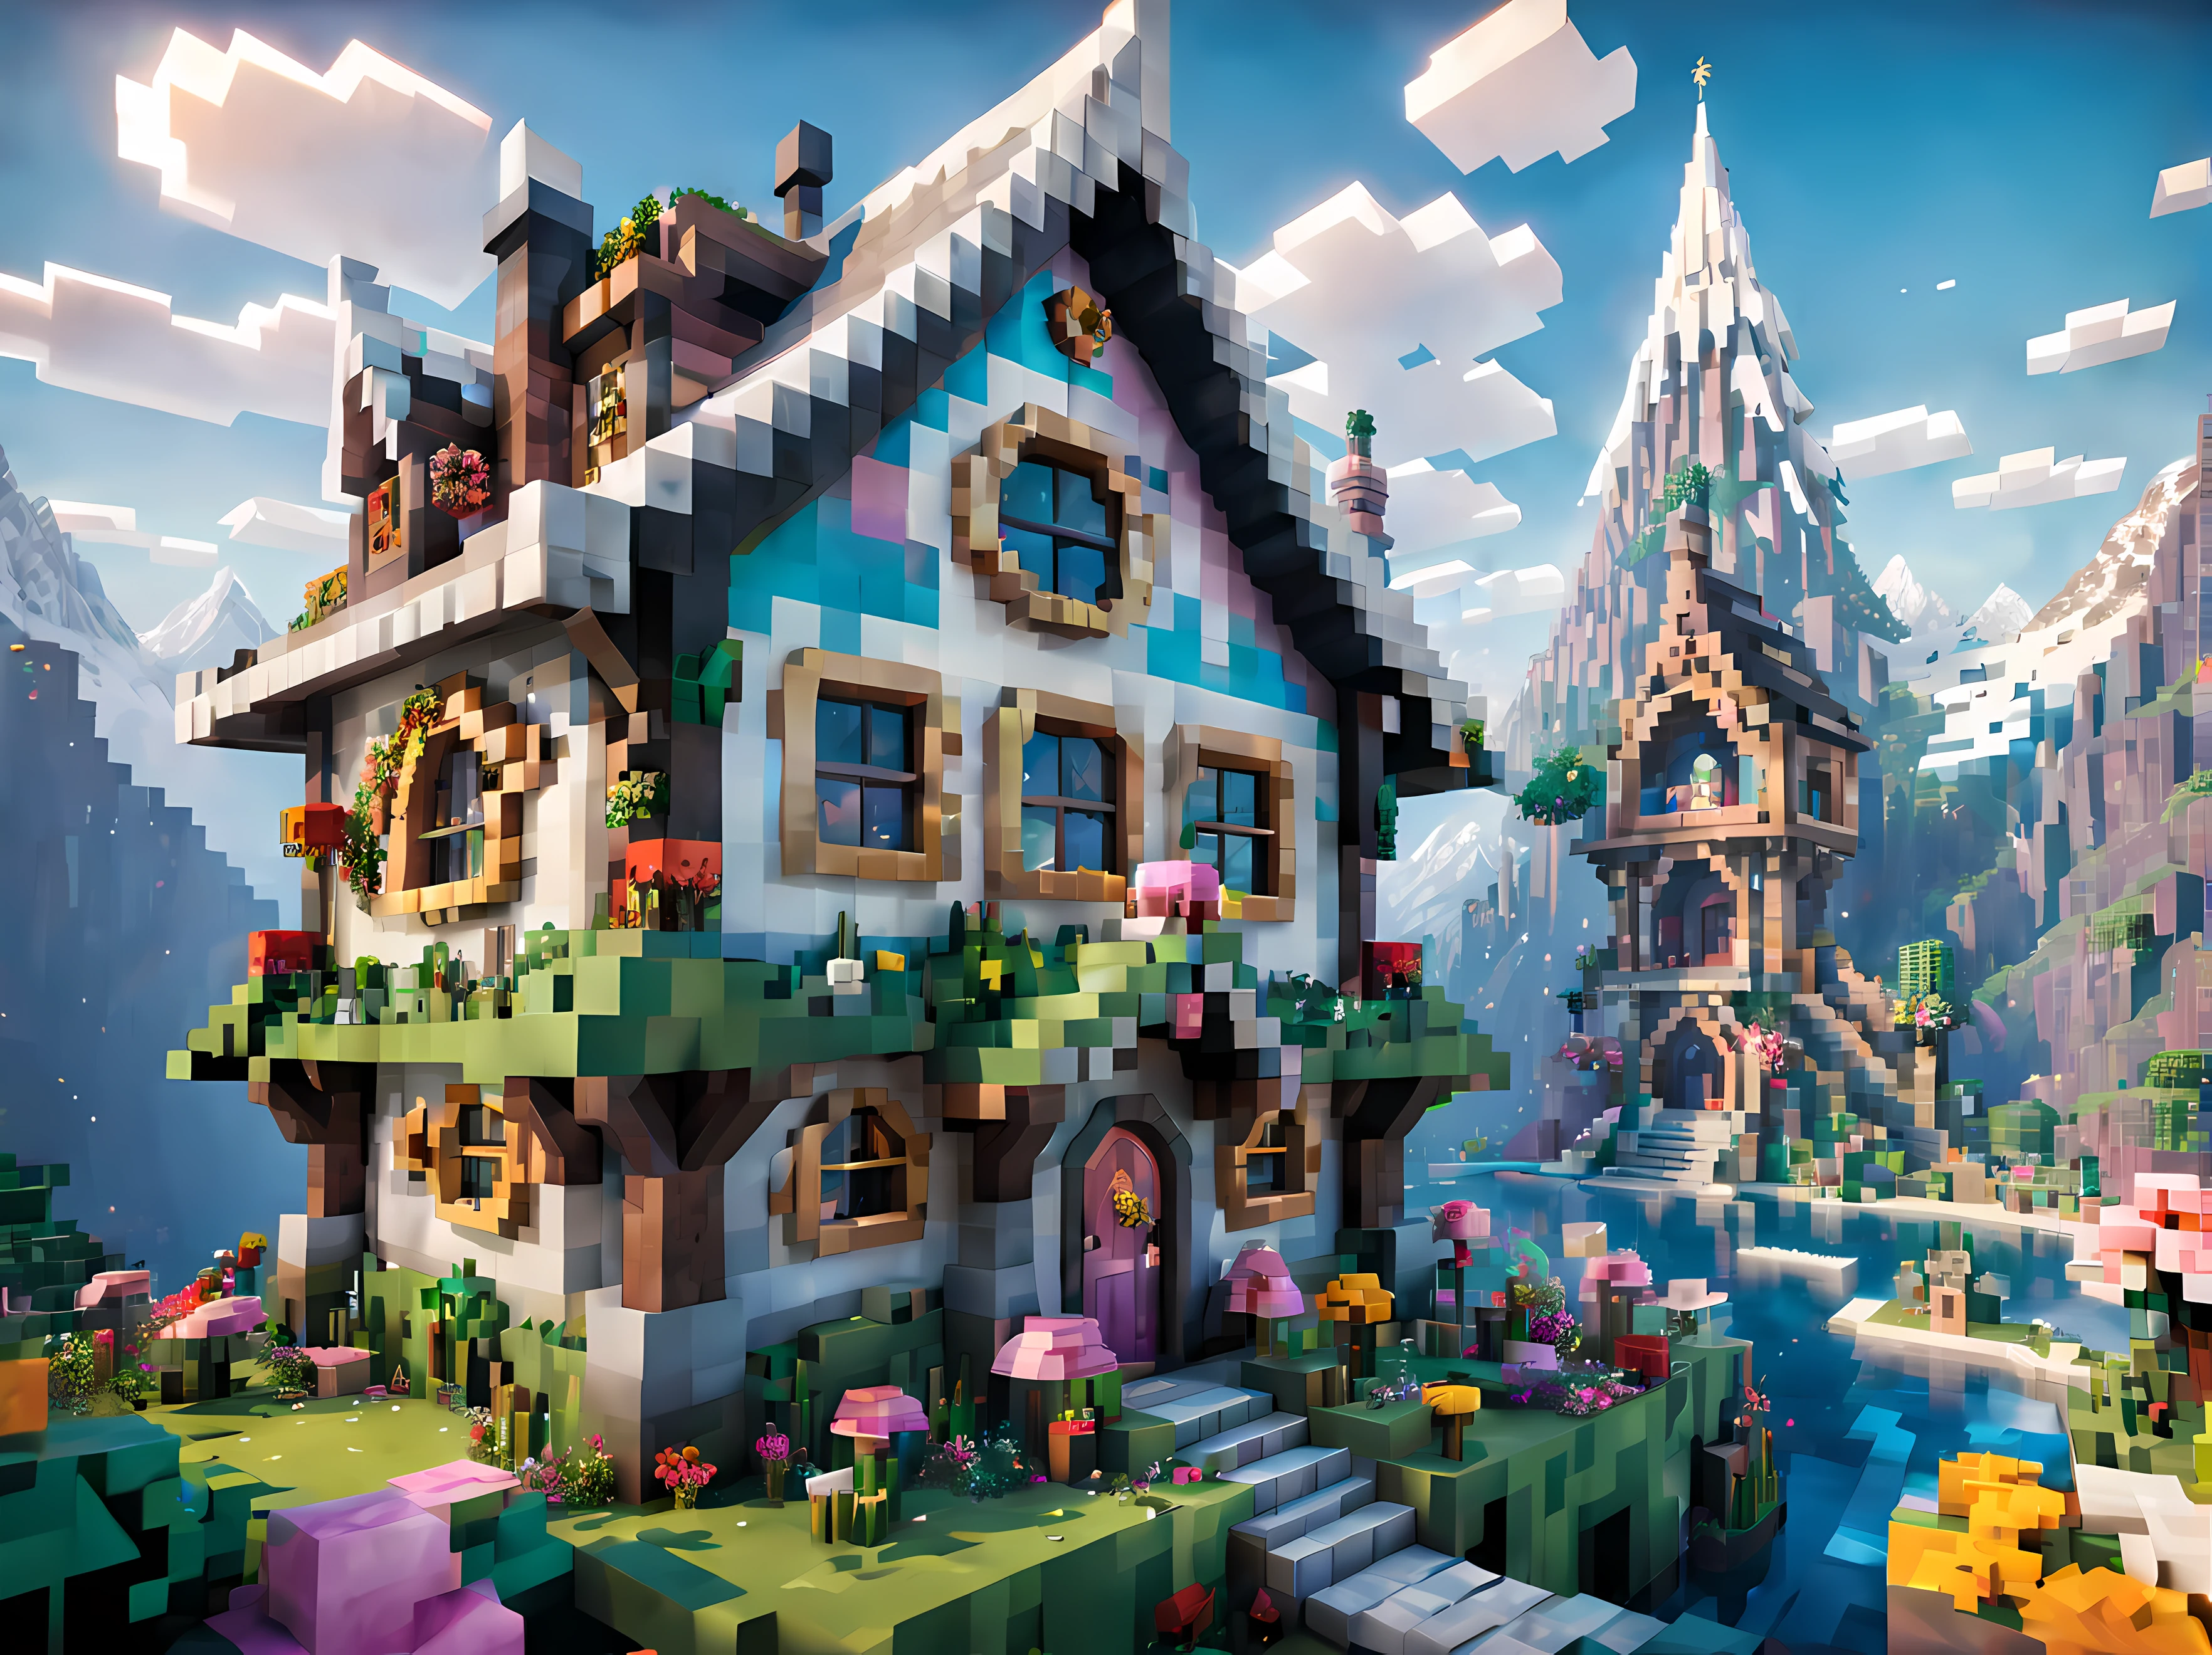 Minecraft-Stil (ultrarealistisch:1.3), (Seitenansicht:1.5) eines (große, hohe Feenhütte) mit runden Fenstern, Umweltkunstwork, Umweltkunst, (elegante Dekorationen), (mystisches Pfund), (Schön:1.4), (attraktiv:1.3), episch verschneit (Berge), sommer natur, blockig, verpixelt, leuchtende Farben, (mädchenhaft verziert:1.3), Blumen, (heller Himmel), ätherische Teilchen